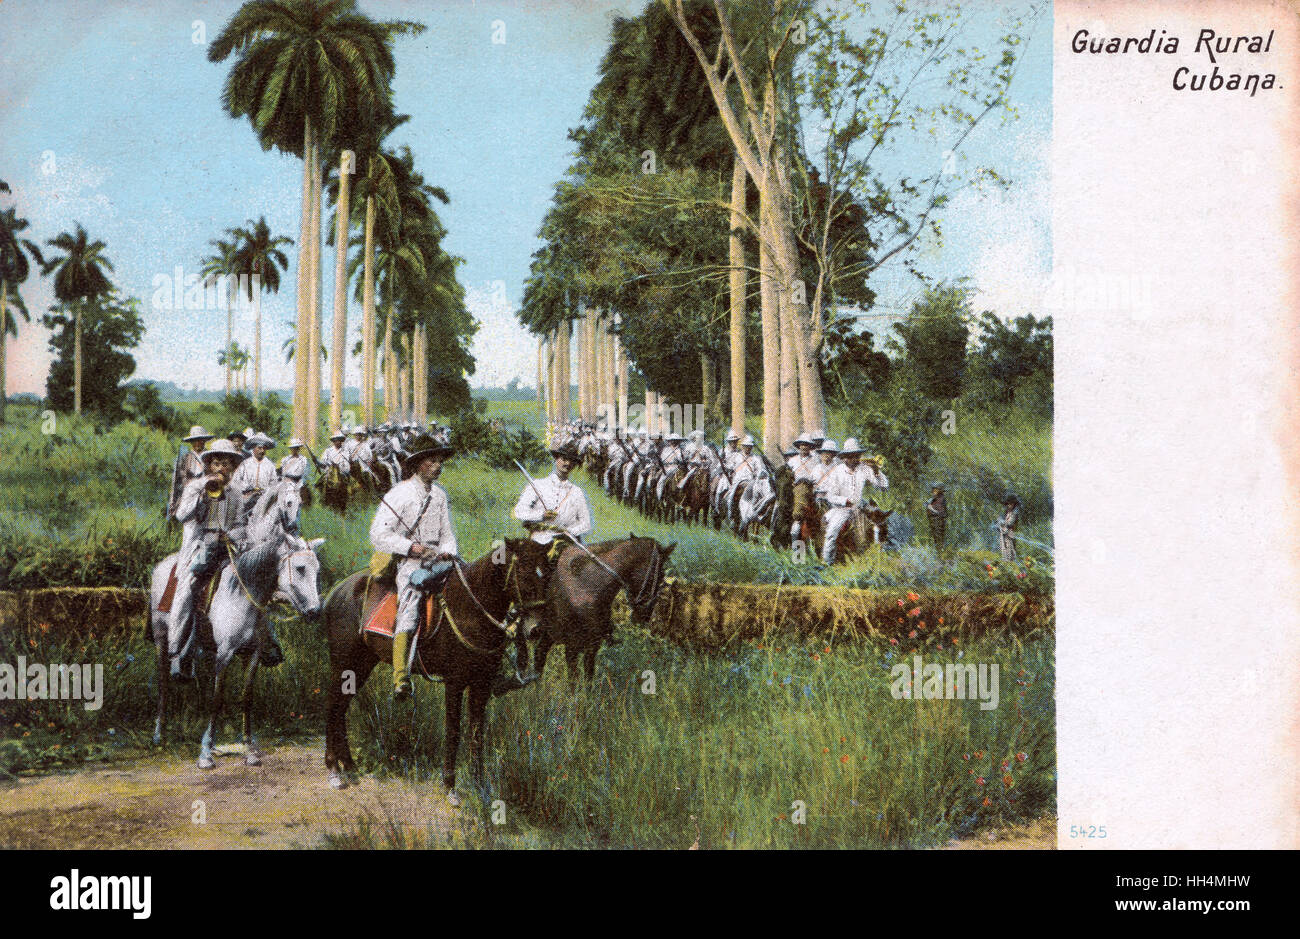 Landgarde auf dem Pferderücken, Kuba Stockfoto